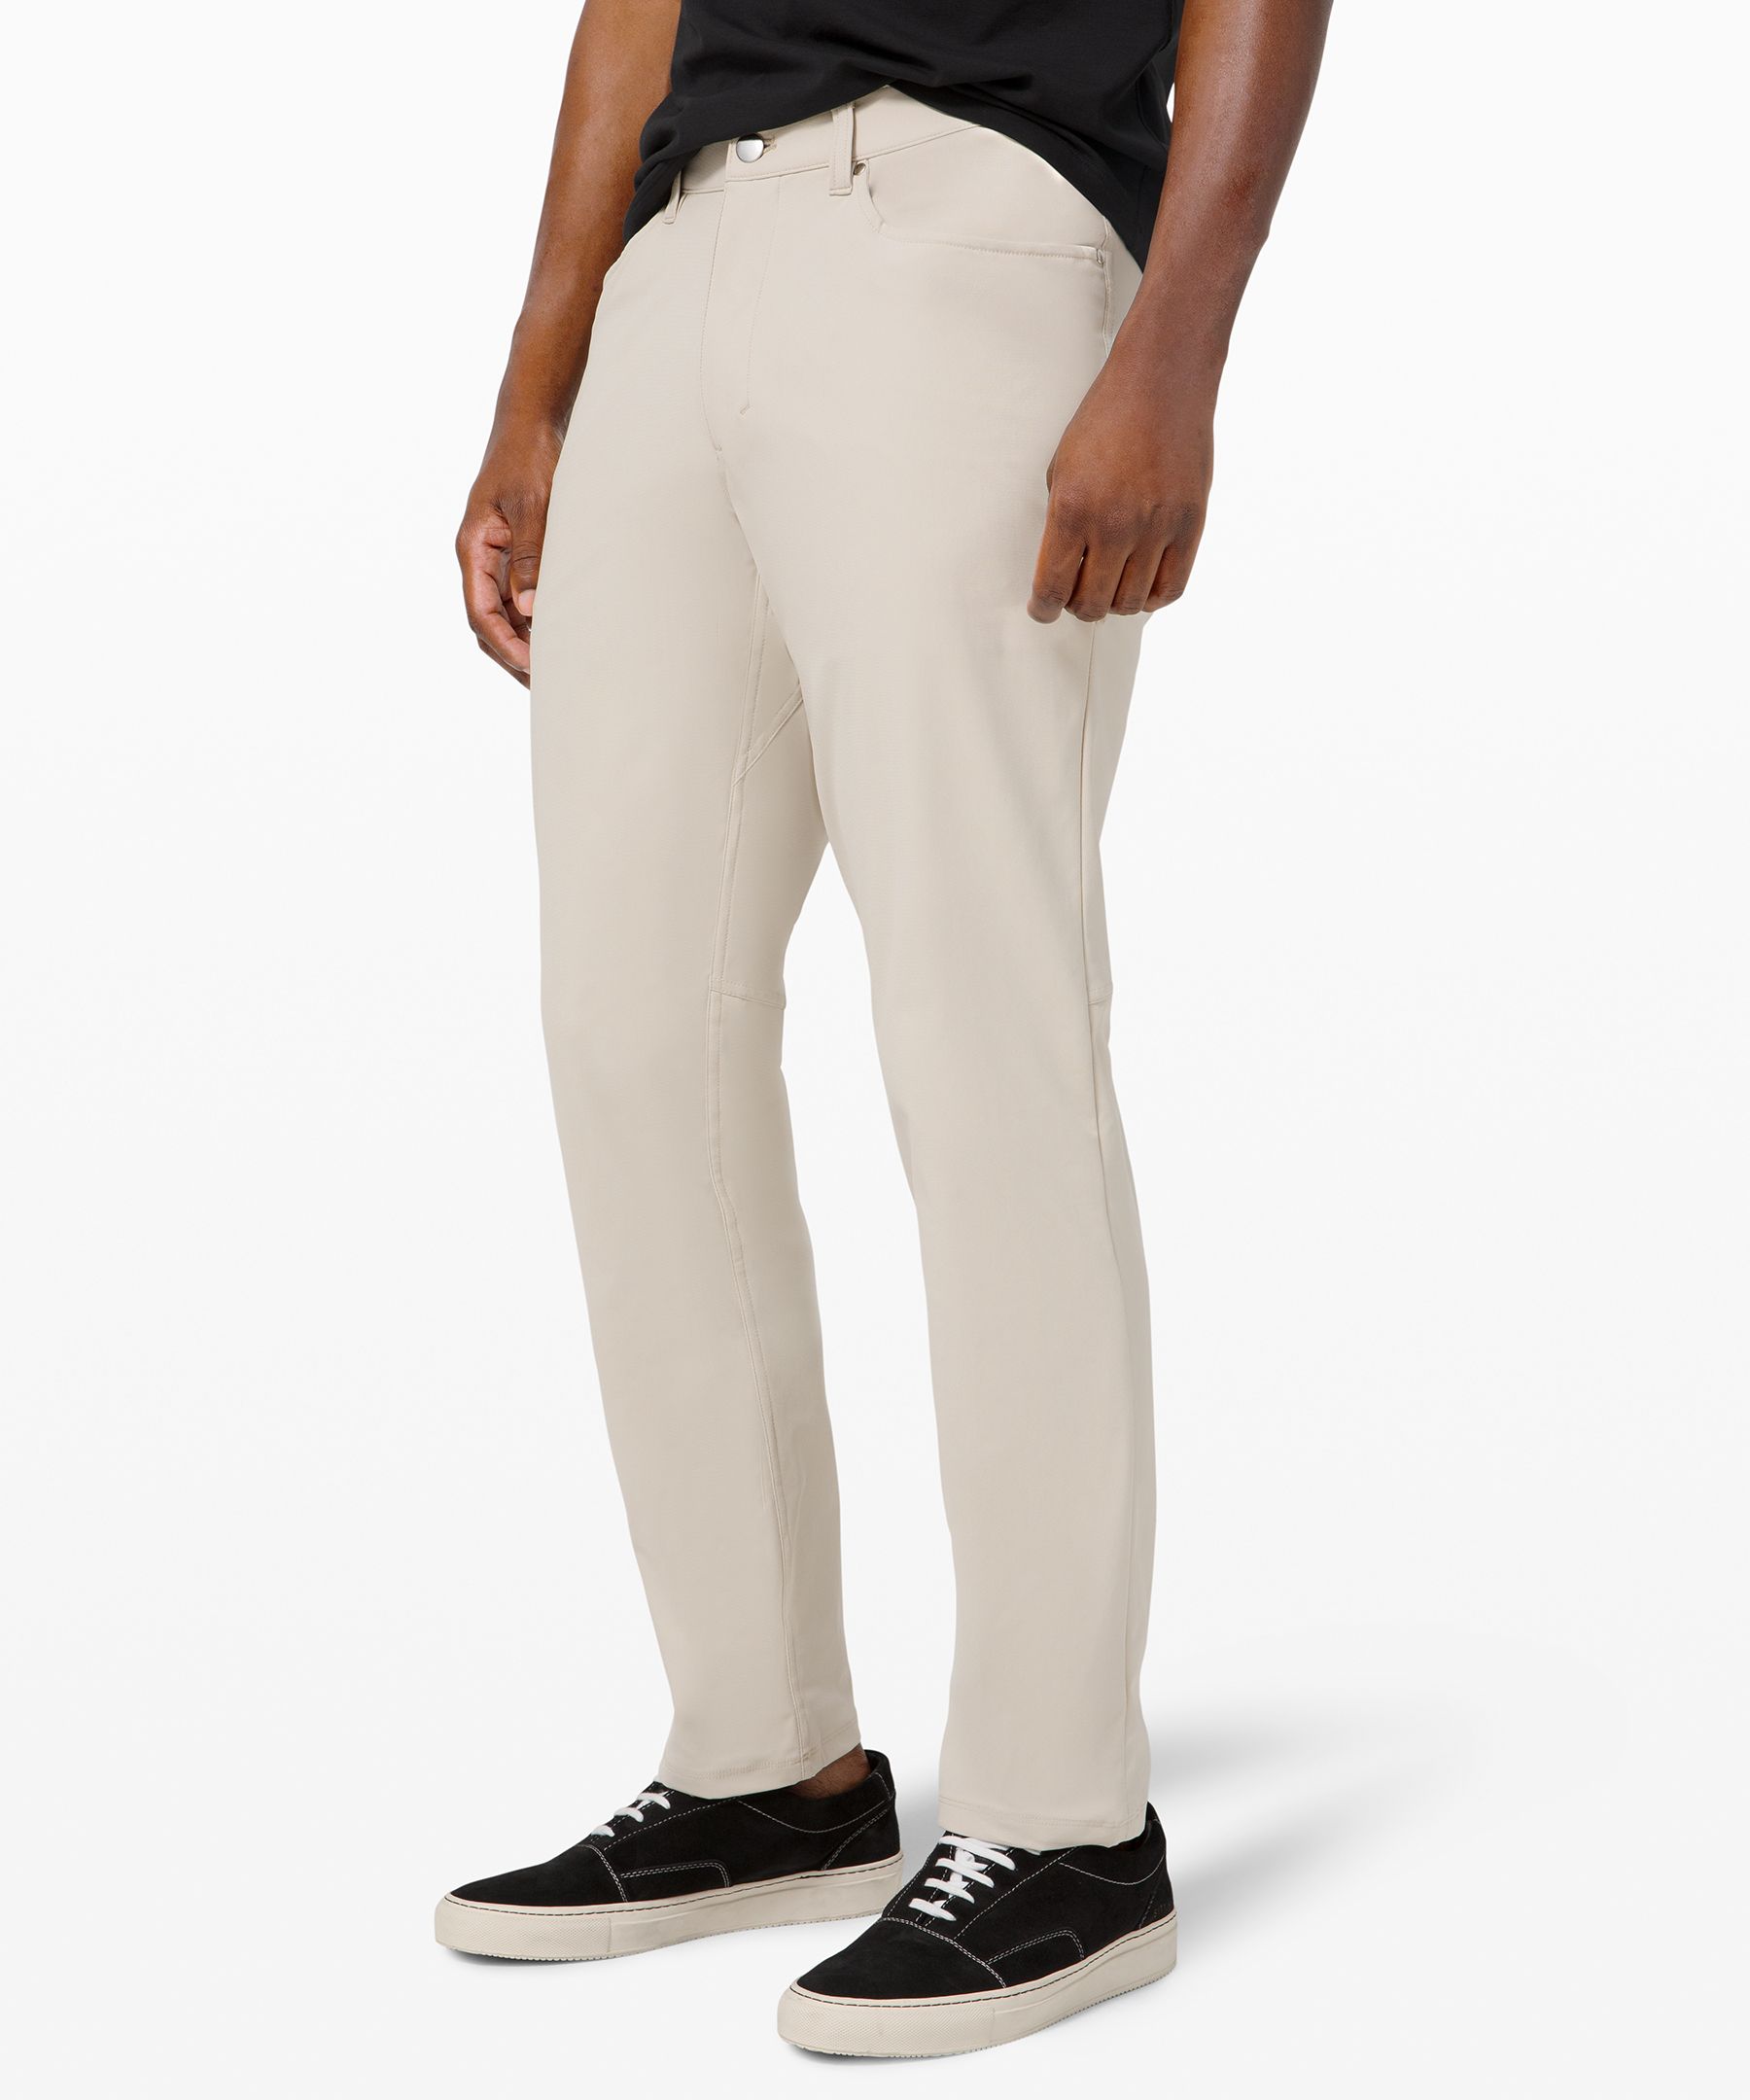 Lululemon Men ABC Classic-Fit Trouser 32 Warpstreme Pants Big Size